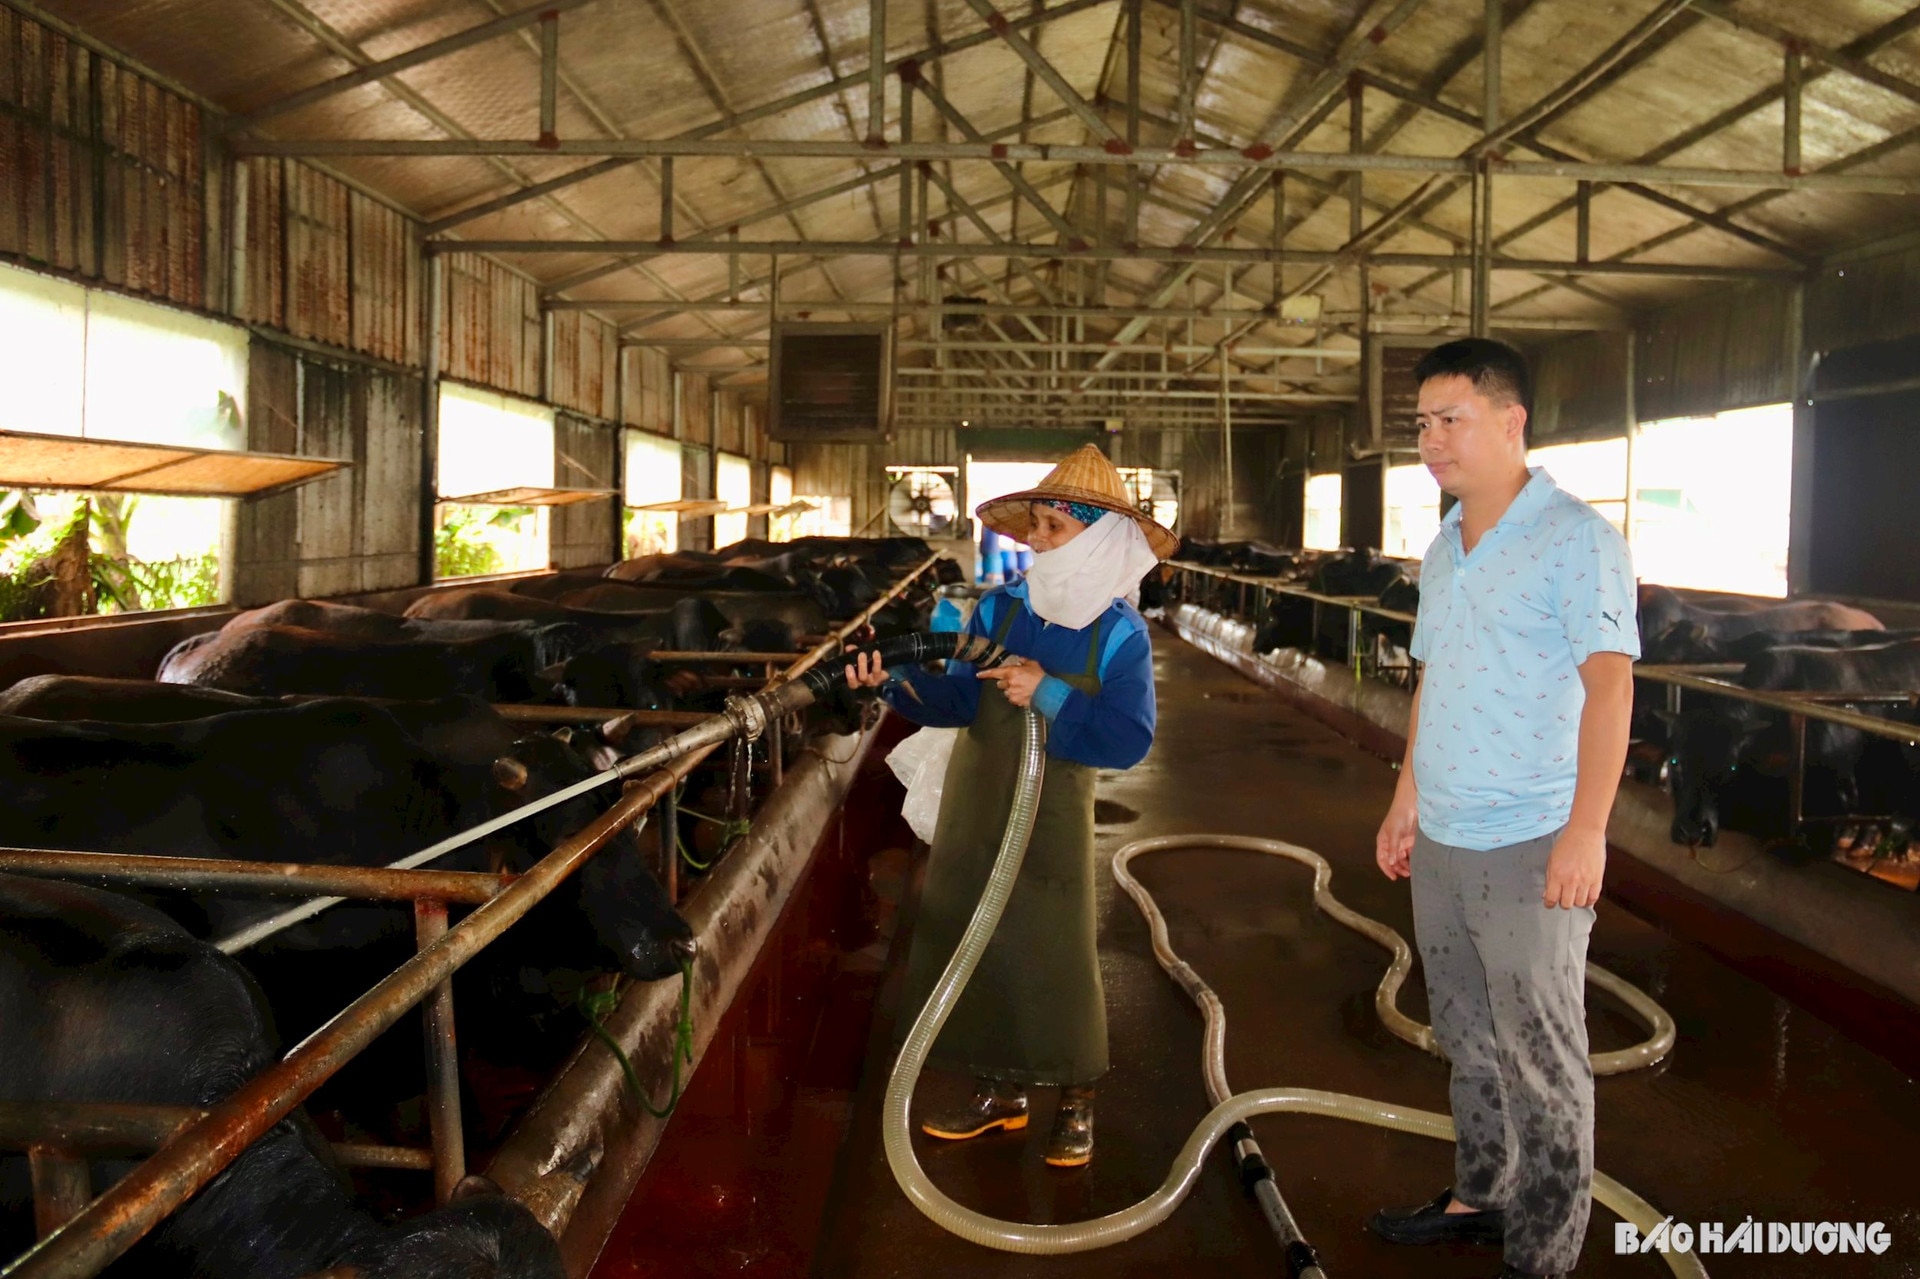 Doanh nhân Hải Dương tay ngang nuôi bò 3B mà đạt doanh thu 15 tỷ- Ảnh 1.